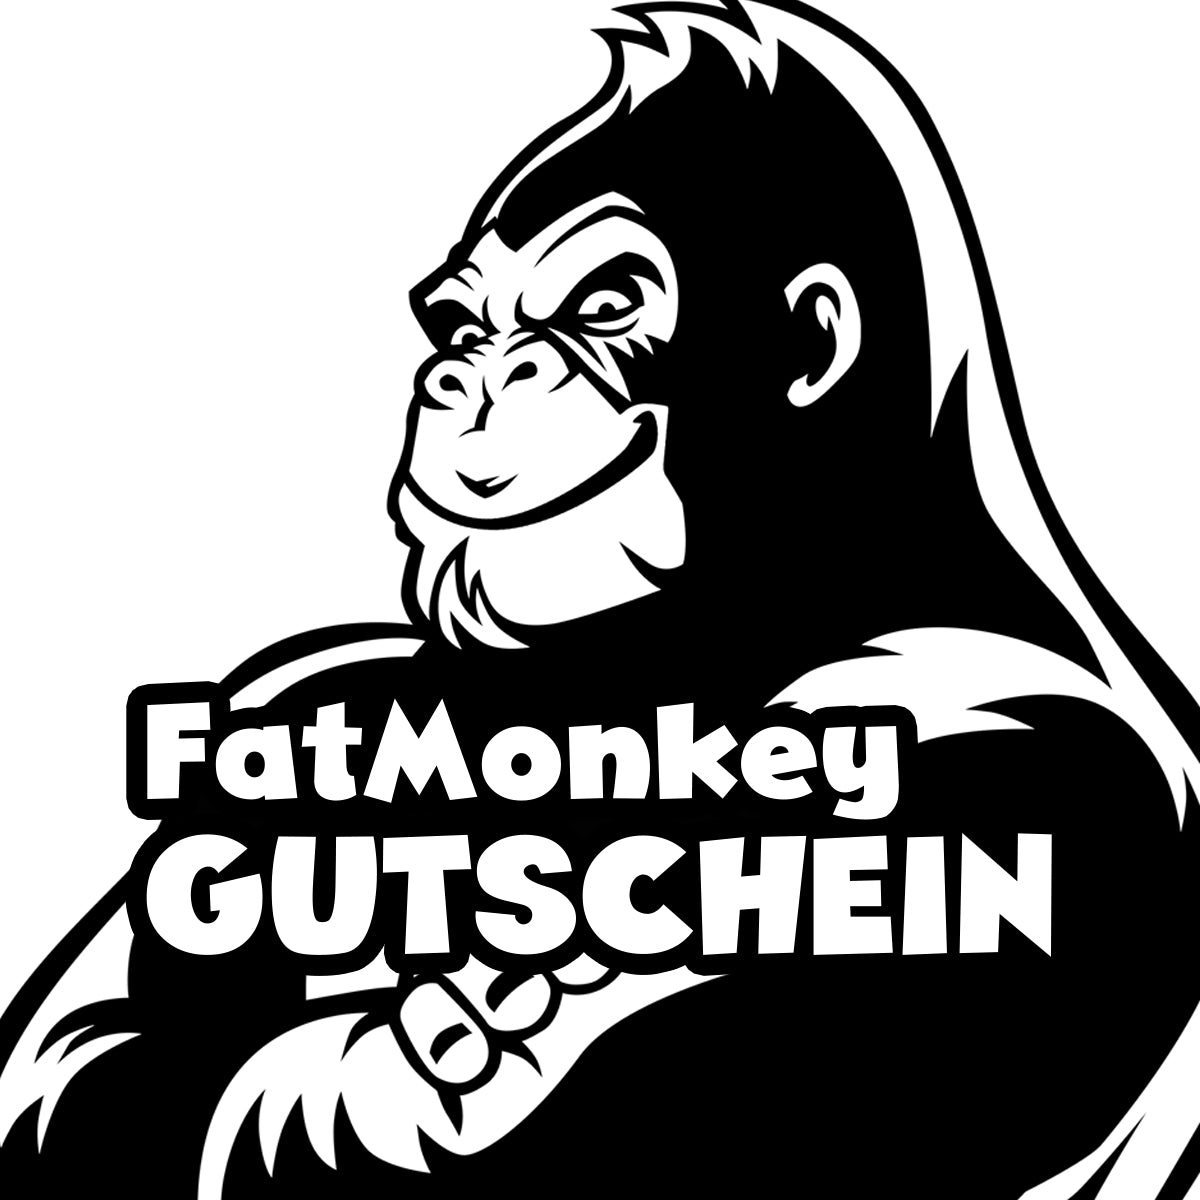 FatMonkey Gutschein Bild mit FatMonkey-Logo